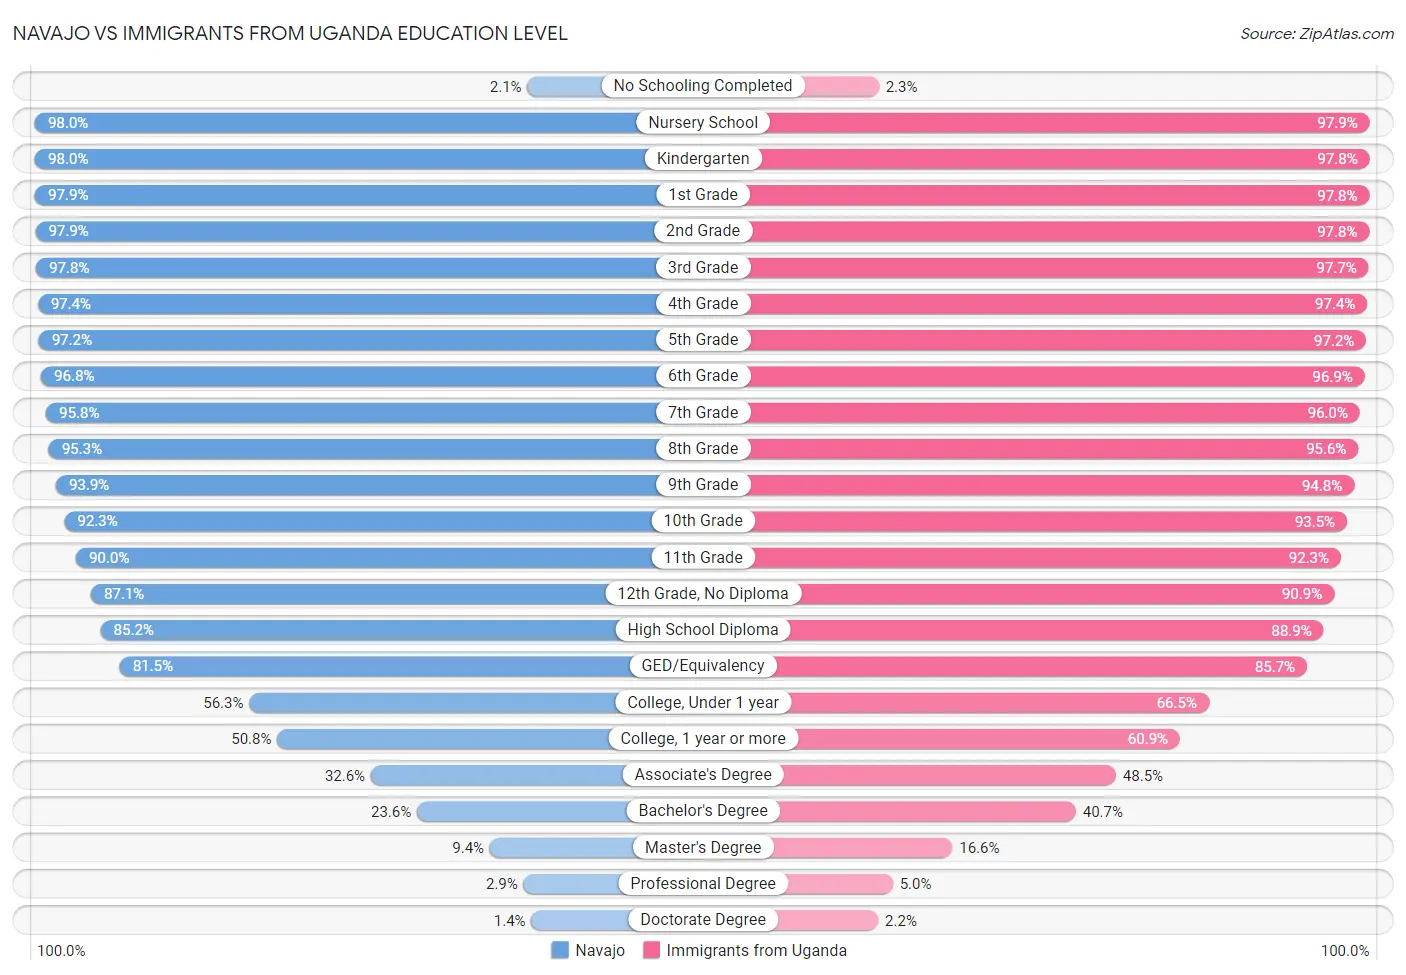 Navajo vs Immigrants from Uganda Education Level